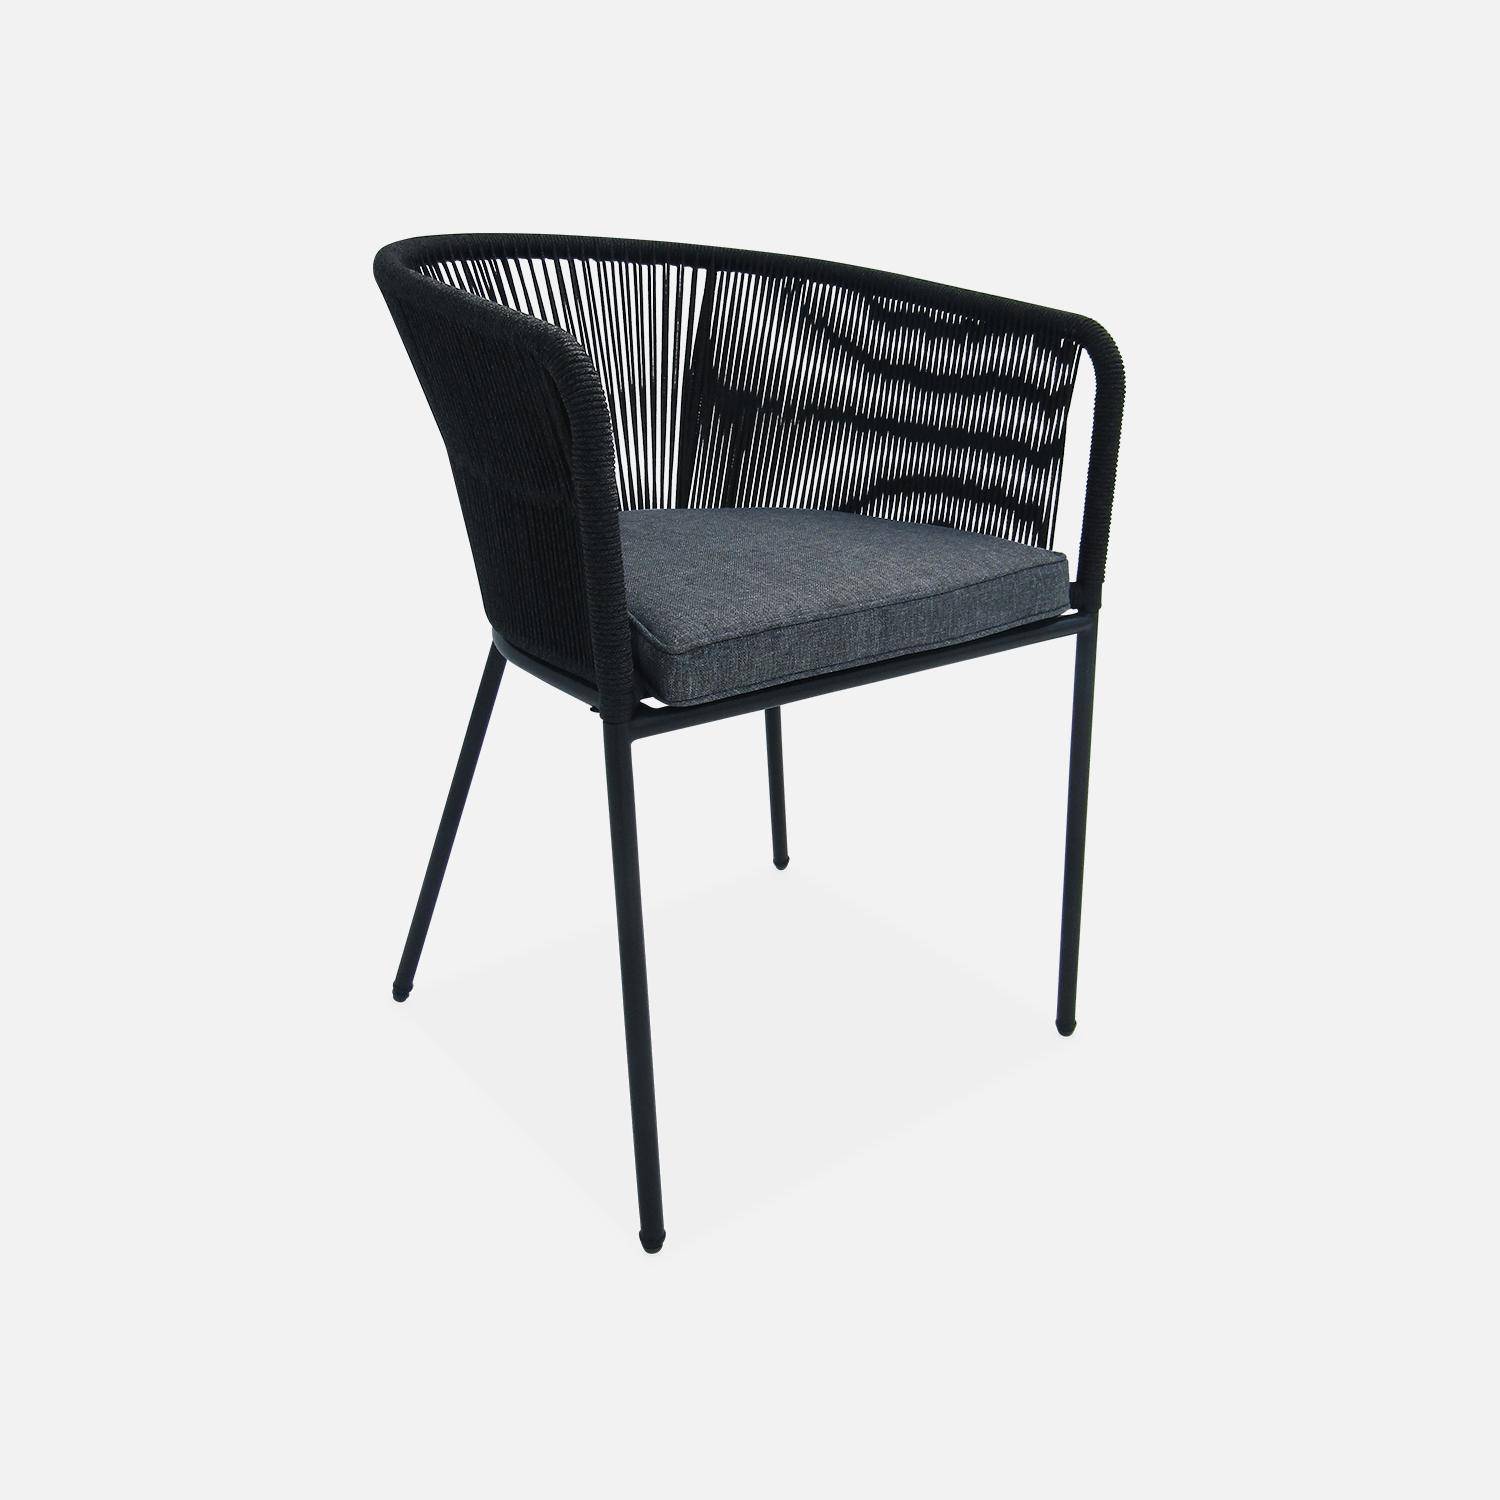 Table à manger bois d'acacia ronde, intérieur / extérieur + 4 fauteuils en corde noir et acier,sweeek,Photo6